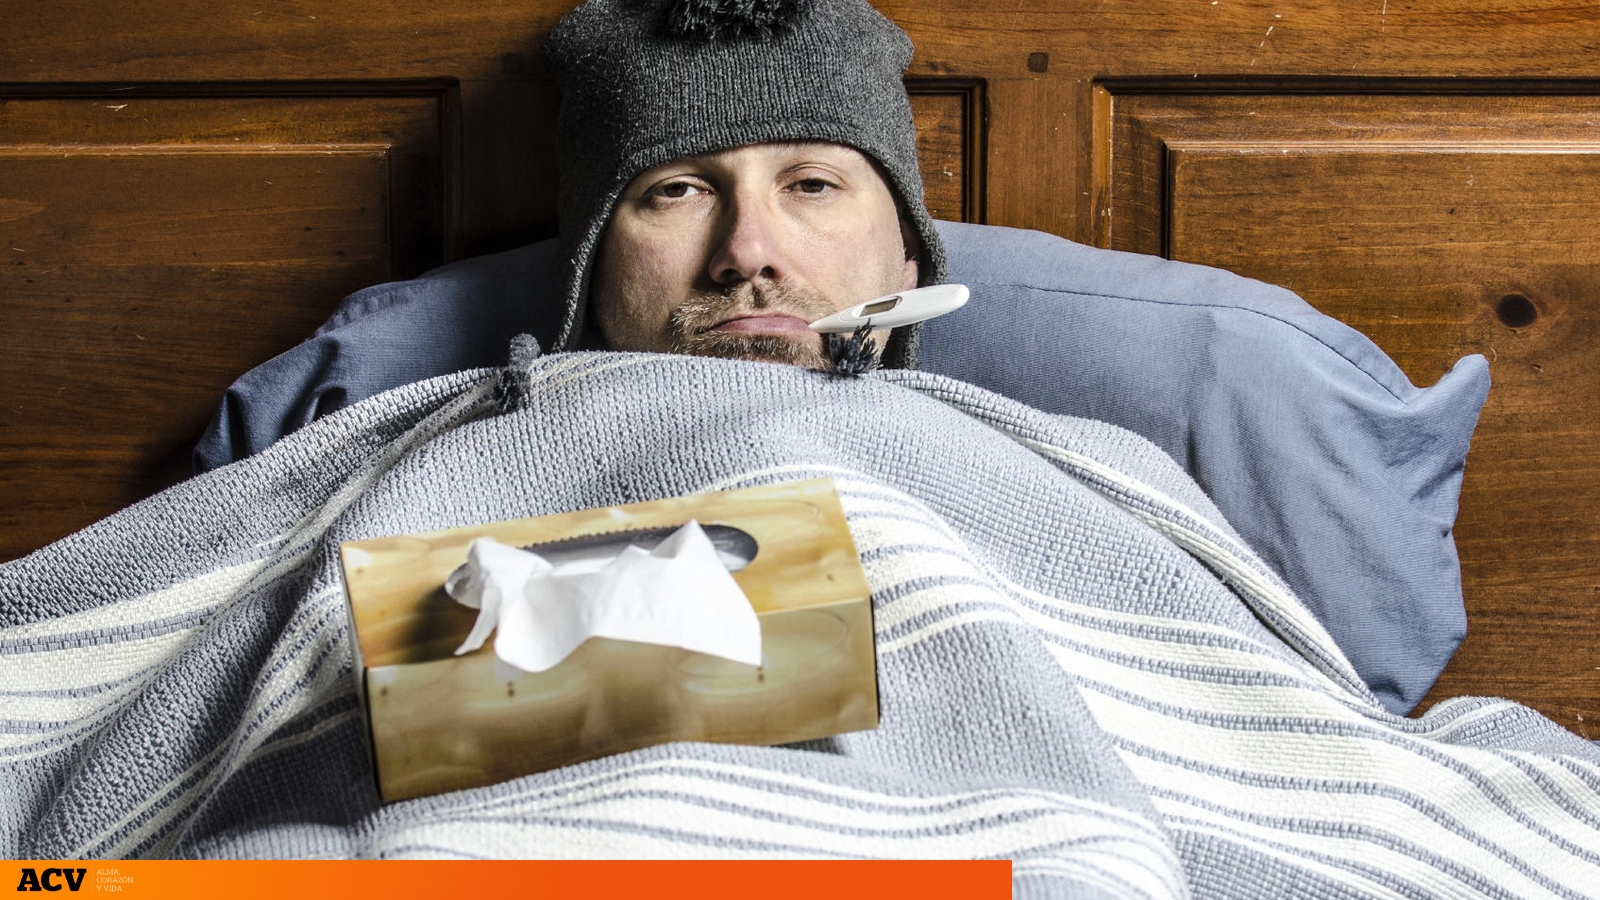 Los seis trucos más eficaces para no enfermar por culpa del frío